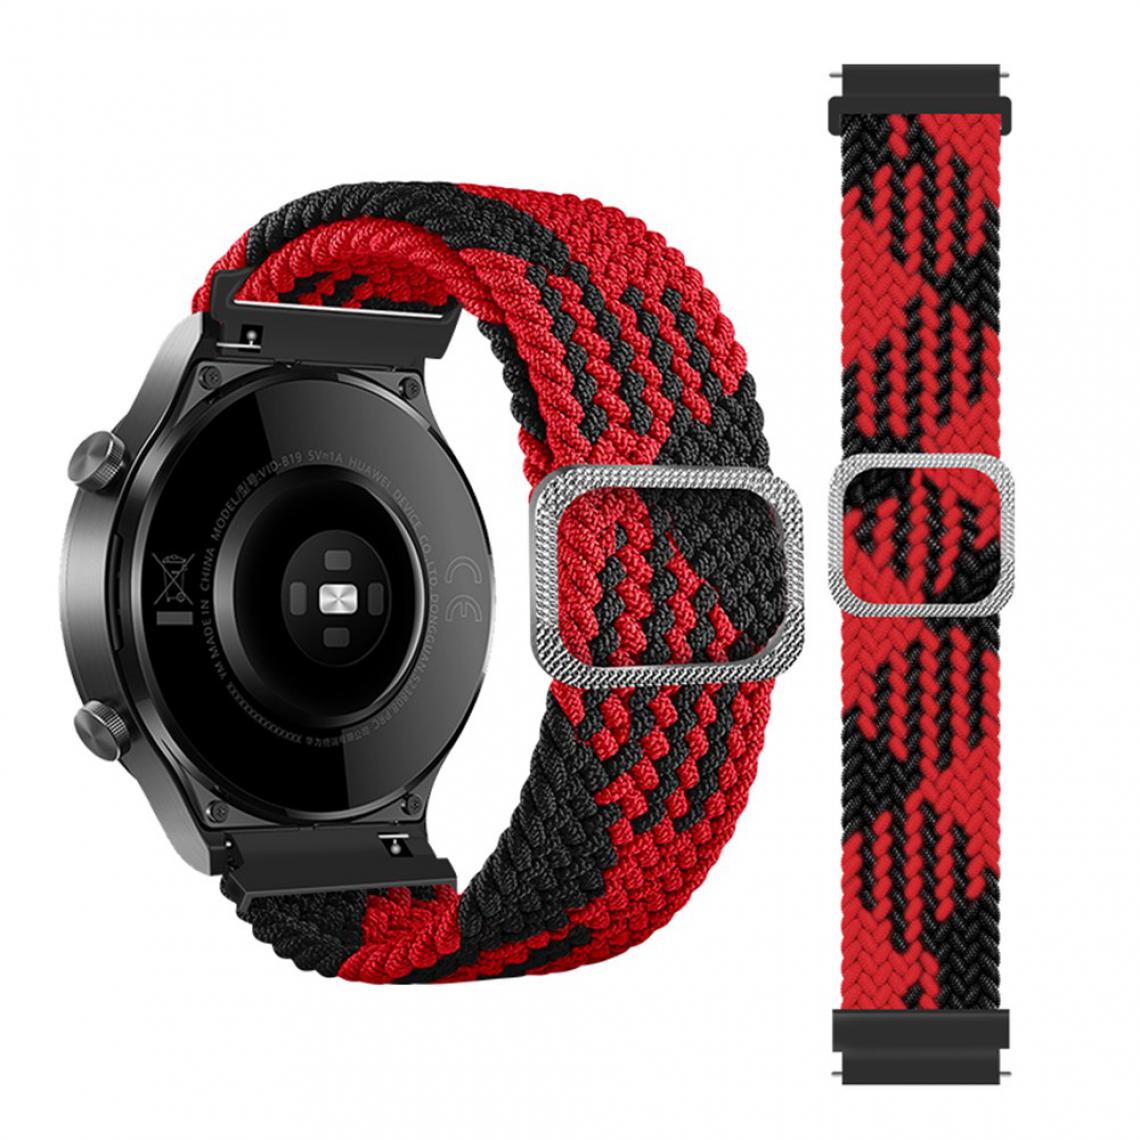 Other - Bracelet en tissu Corde tressée de 20 mm réglable rouge/noir pour votre Samsung Galaxy Watch Active/Active2 40mm/Watch 42mm - Accessoires bracelet connecté